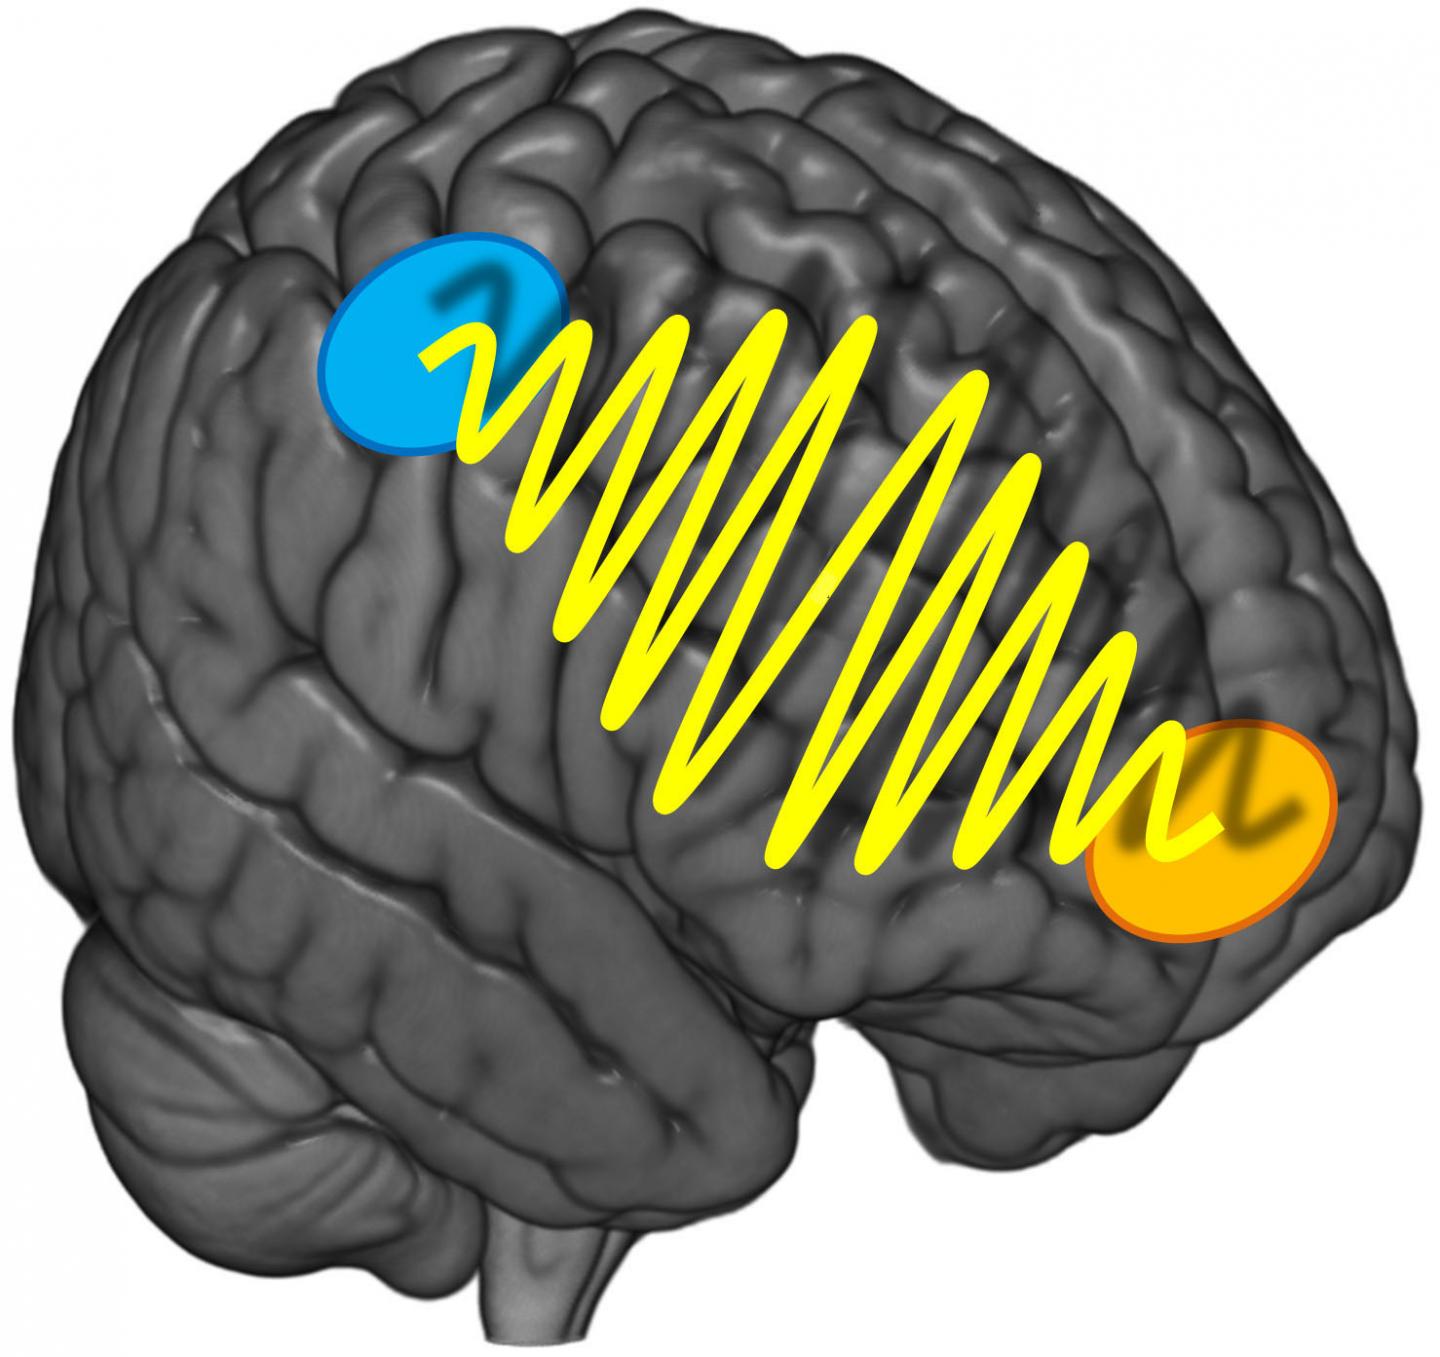 Information Flow between 2 Brain Regions